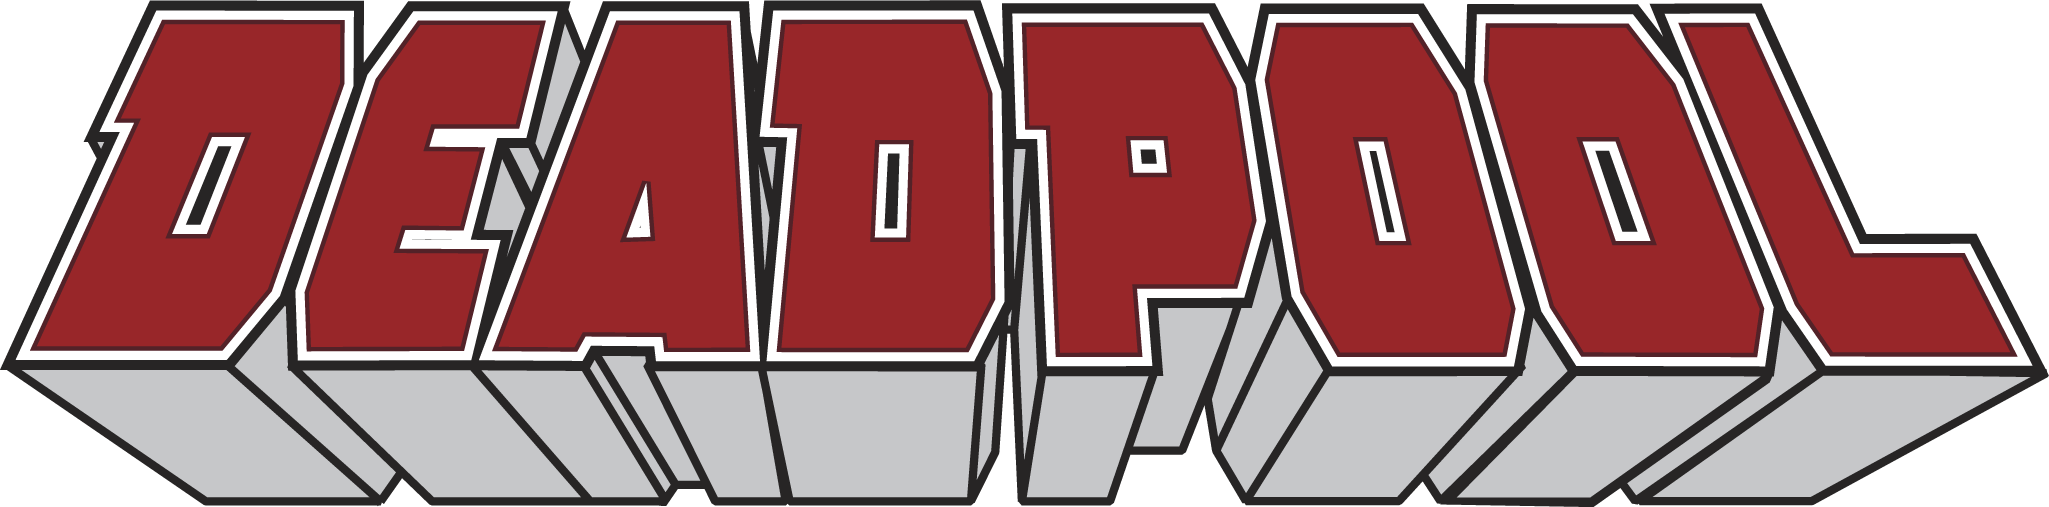 「デッドプール」ロゴ